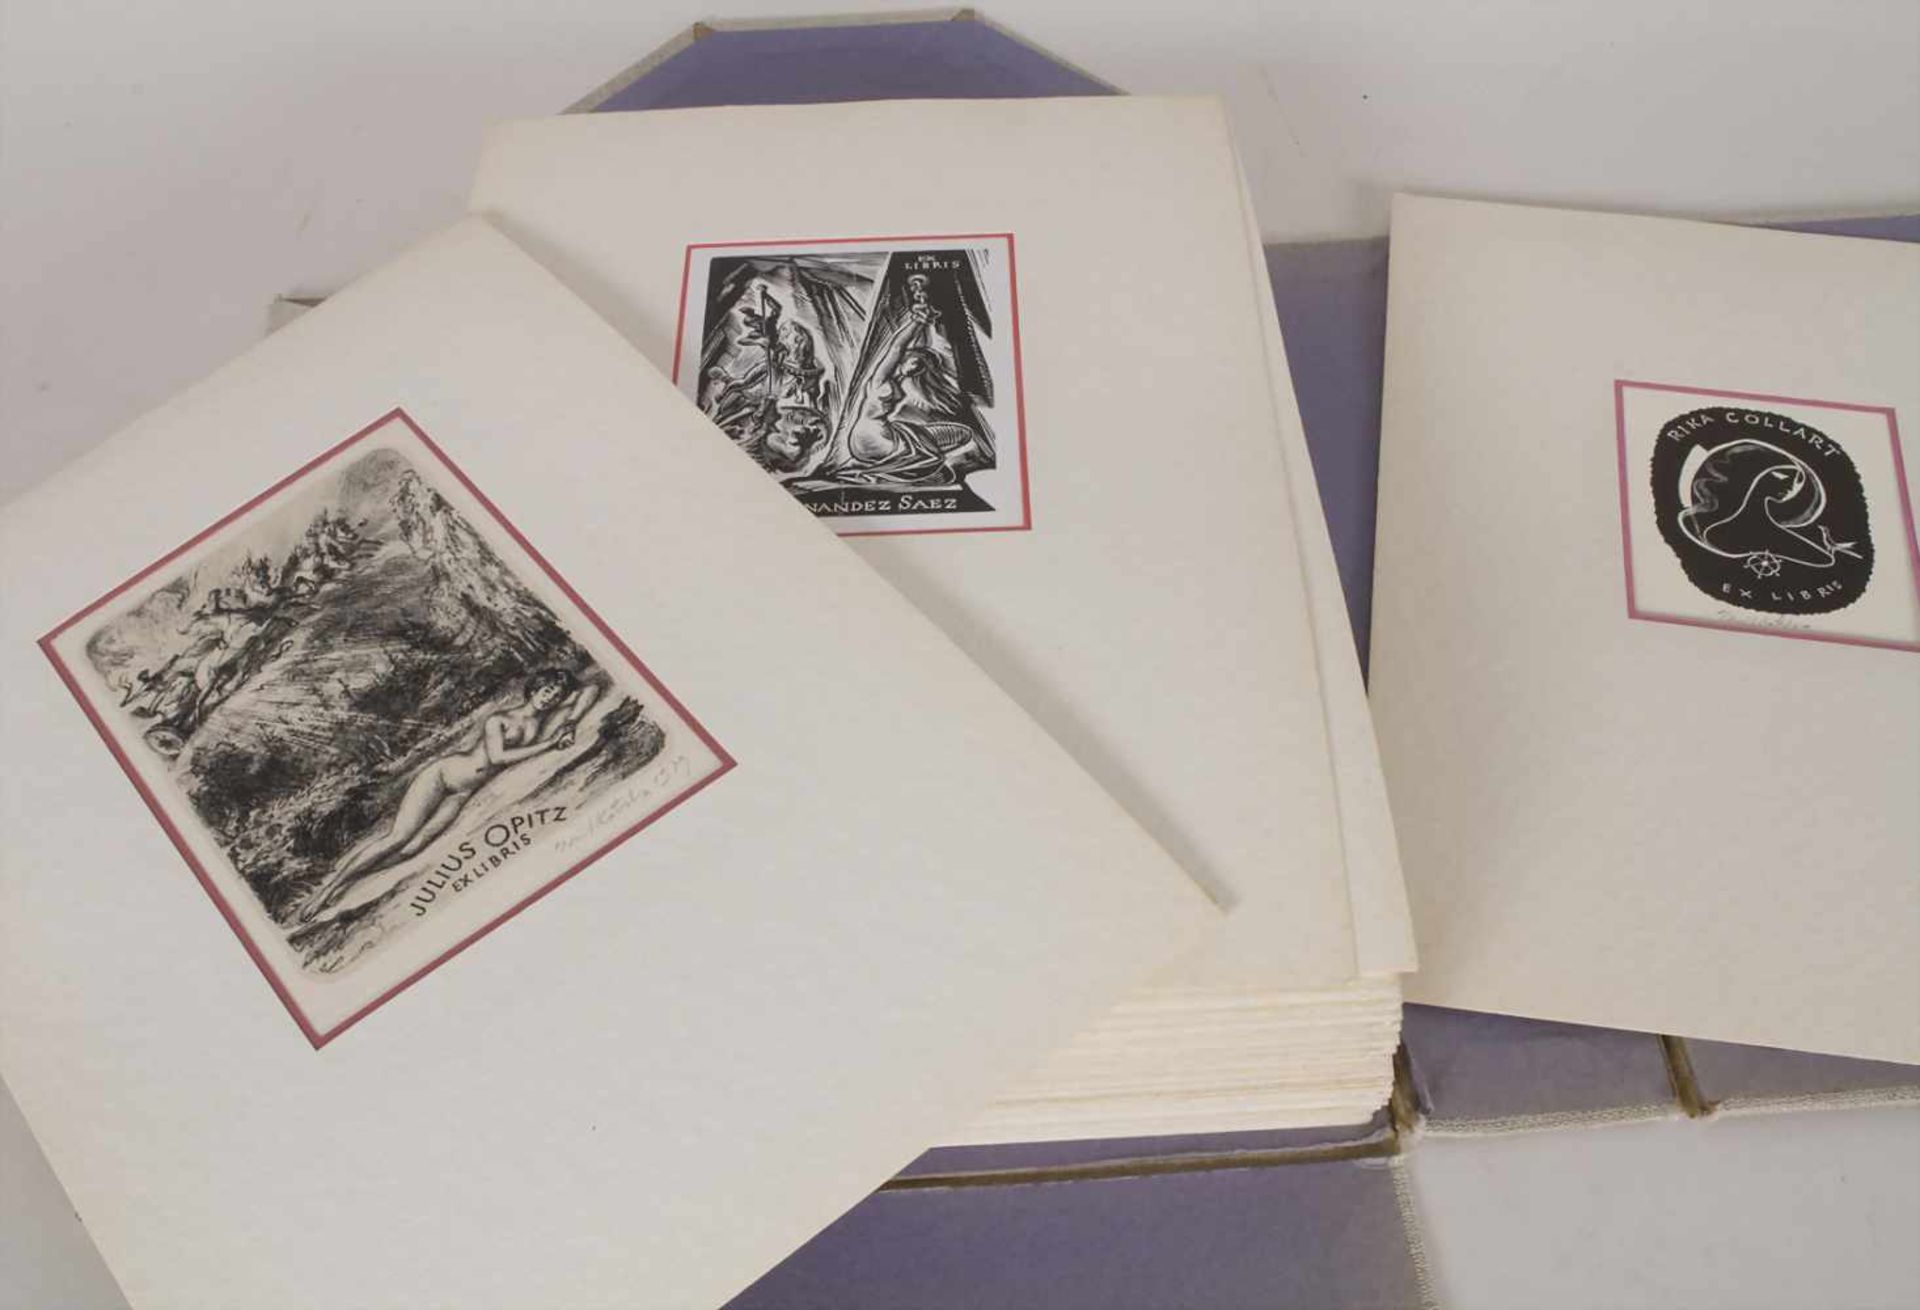 Sammlung 78 Exlibris / A collection of 78 Exlibris, 1960/70er JahreTechnik: Druckgrafiken auf